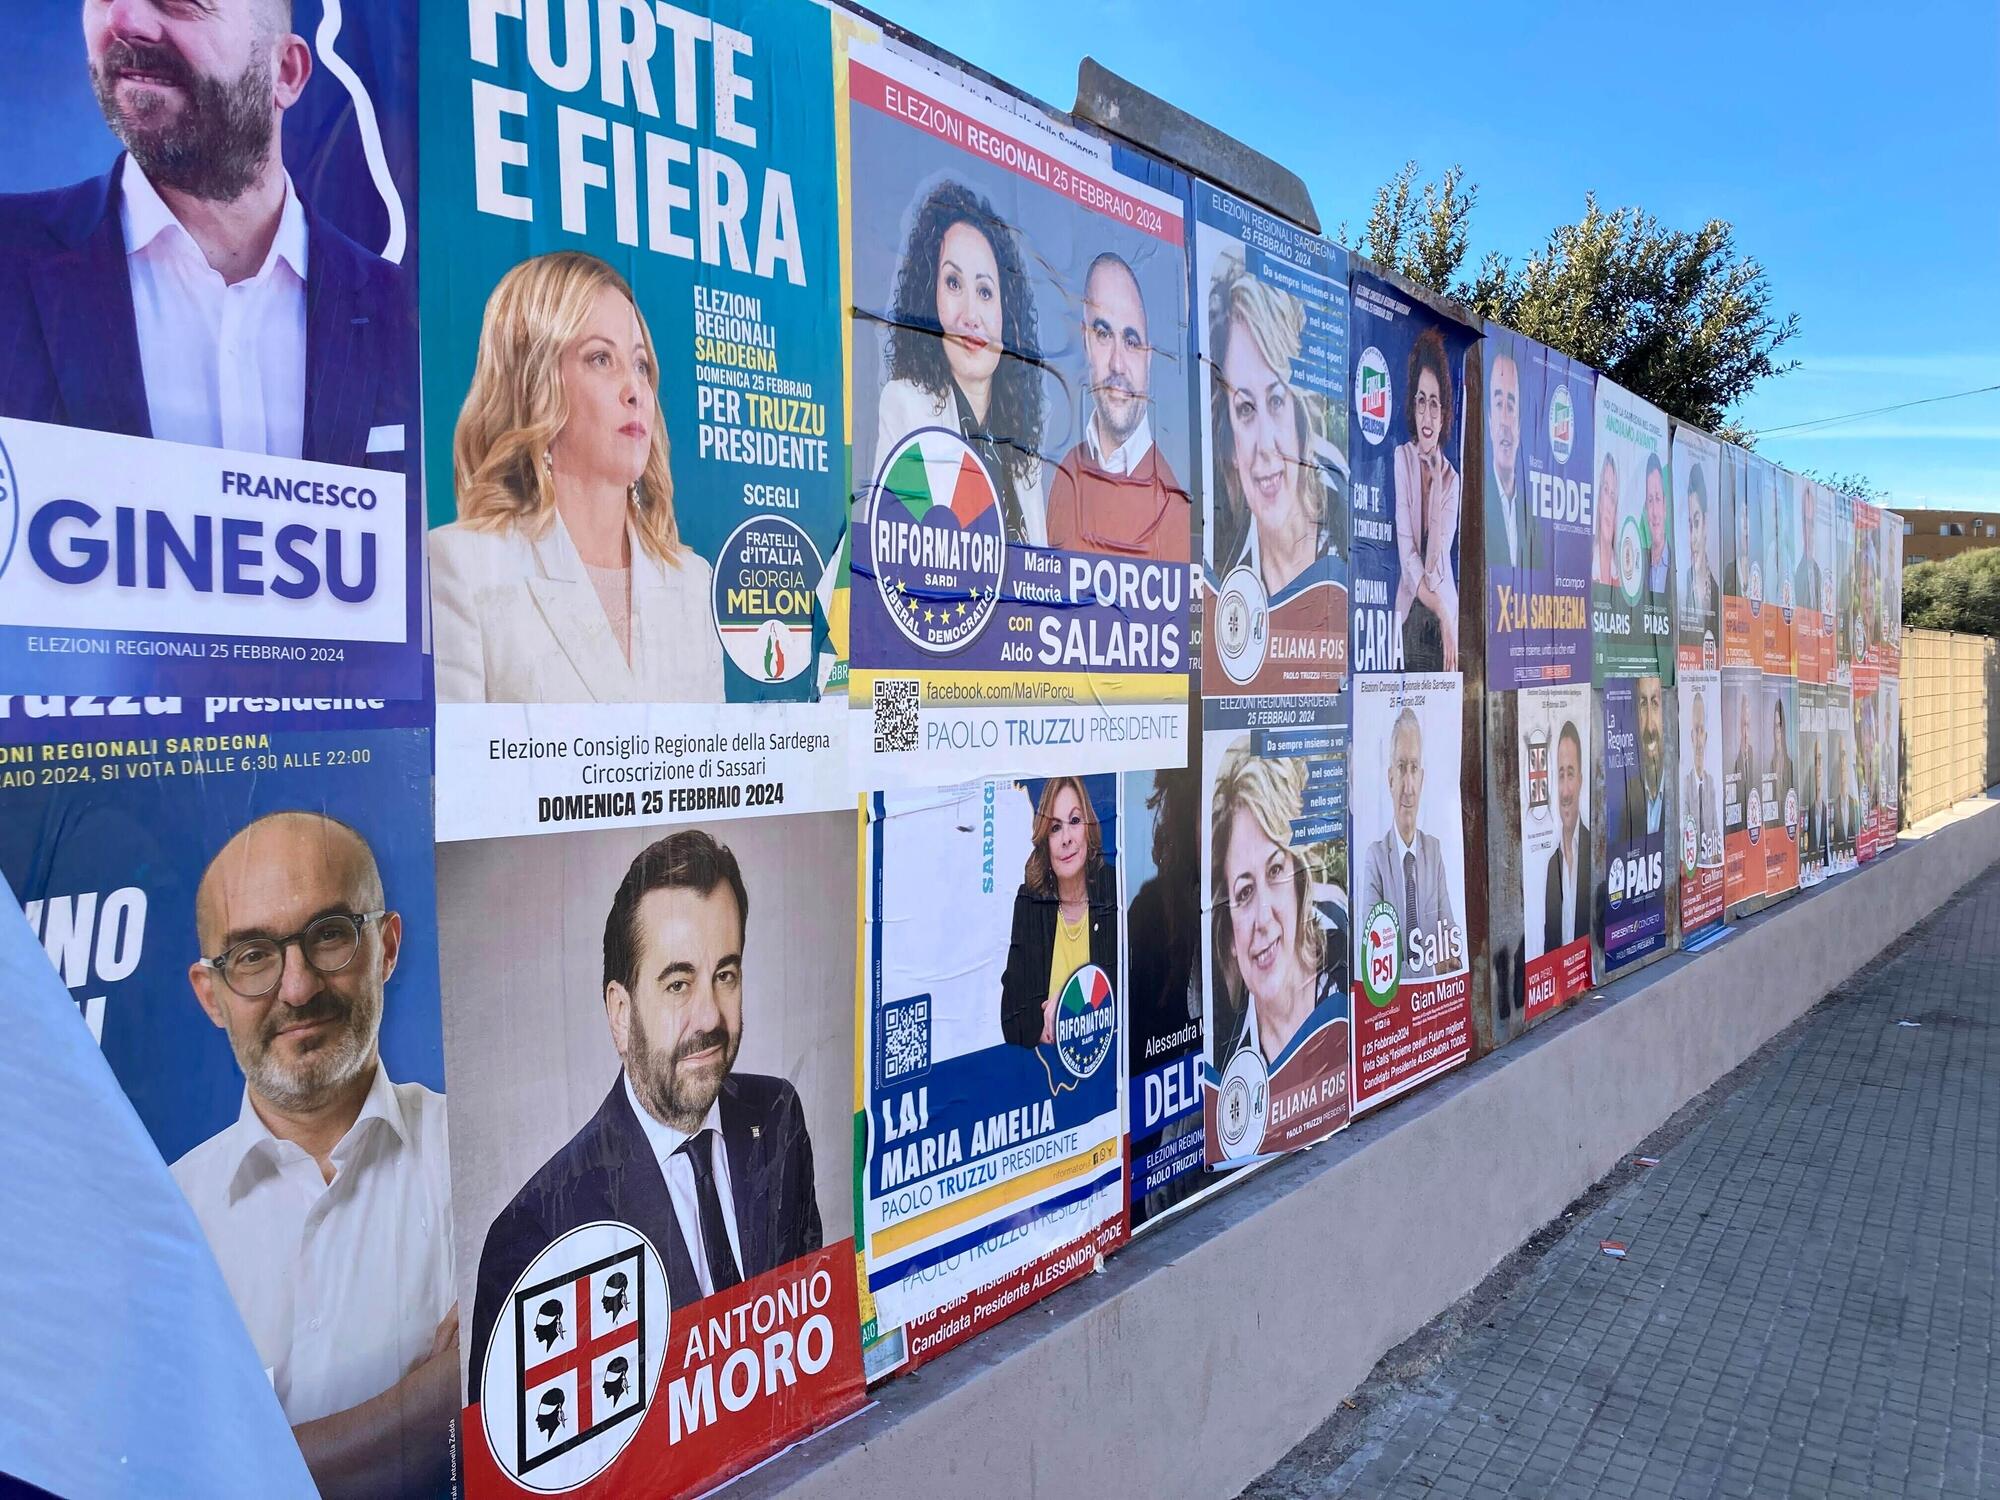 Le elezioni in Sardegna si sono concluse con la vittoria della candidata di centrosinistra Alessandra Todde con il 45,3%